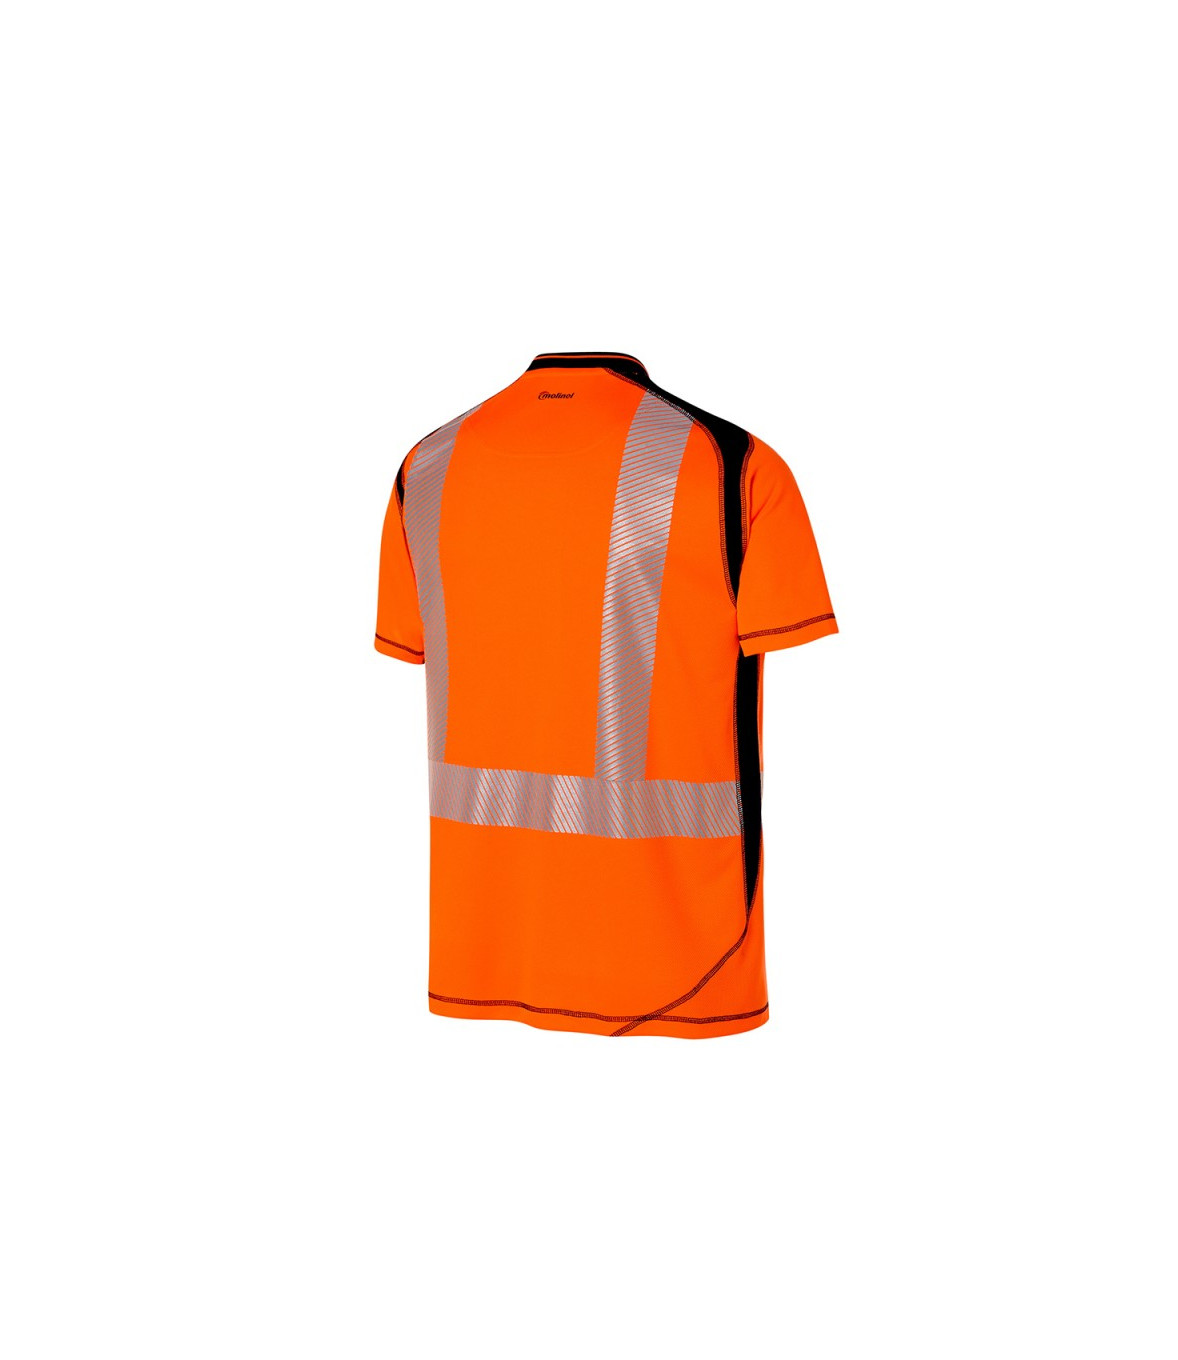 Treehog HI-VISIBILITY Orange/Jaune Fluorescent Travail T-Shirt Toutes Les Tailles 